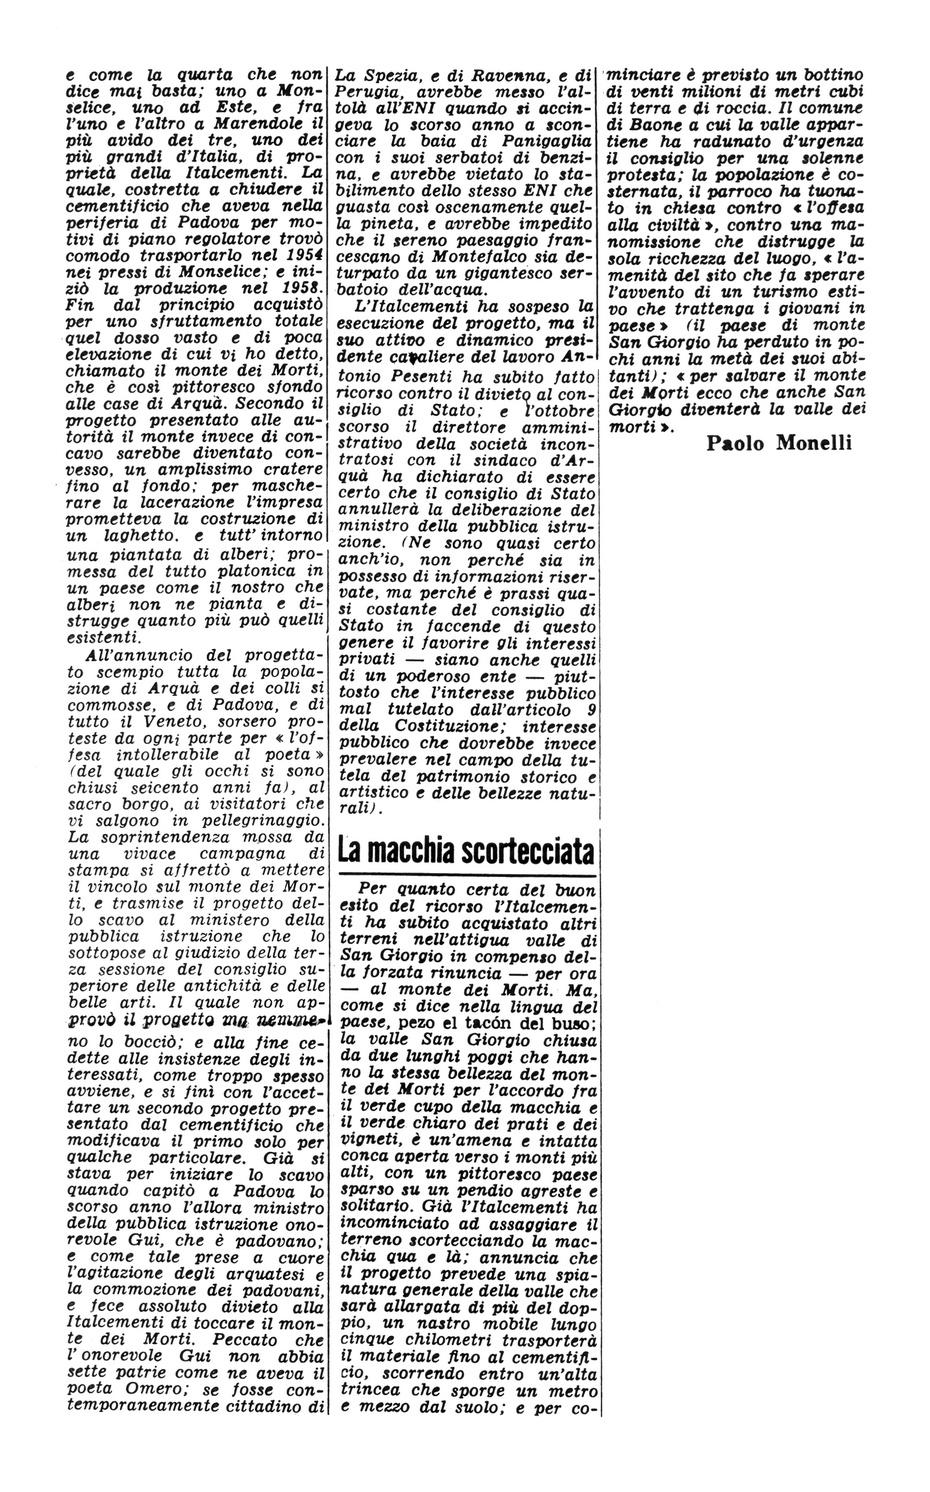 Stanno divorando i Colli Euganei. Articolo del 3 dicembre 1968, seconda parte.